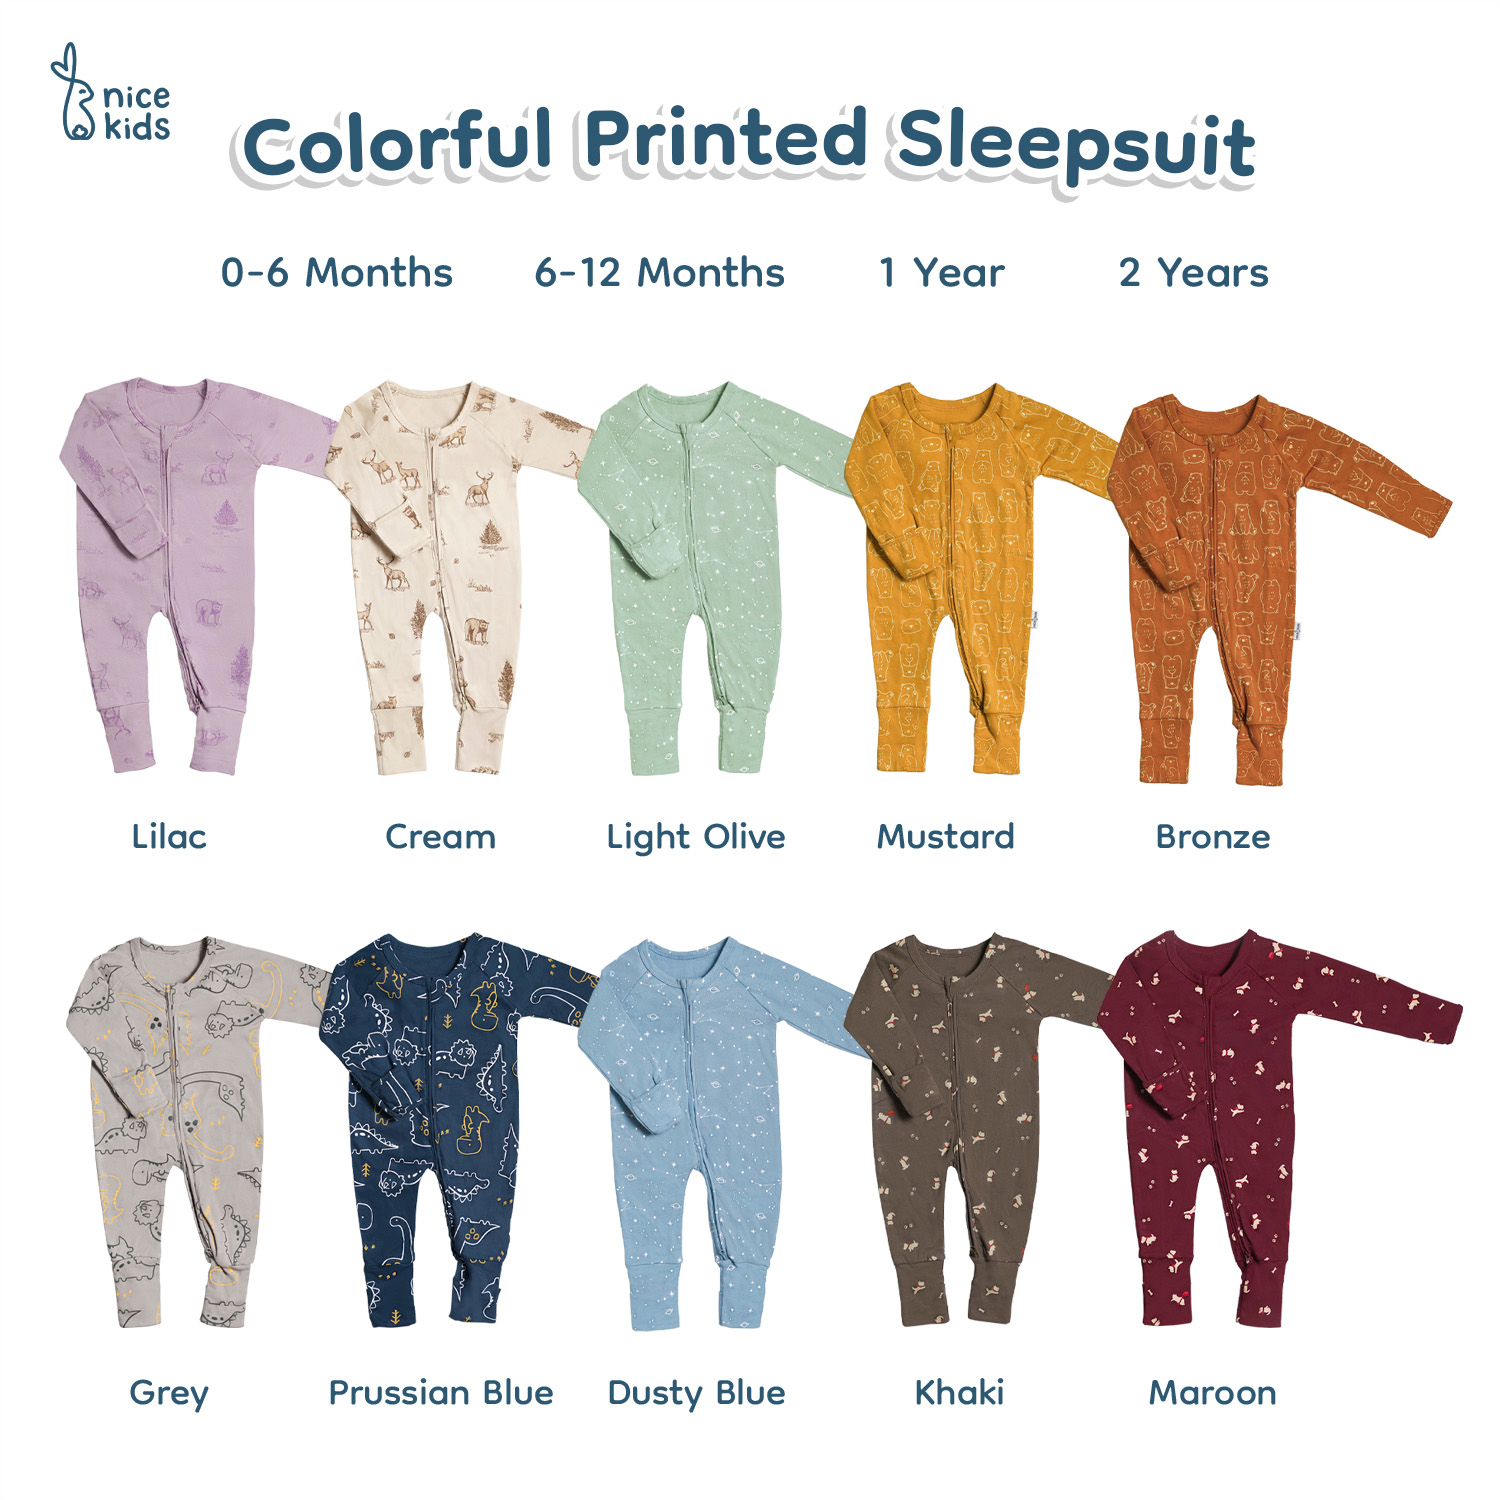 Nice Kids - Colorful Printed Sleepsuit Baby New Born (Tersedia 0-2 Tahun)